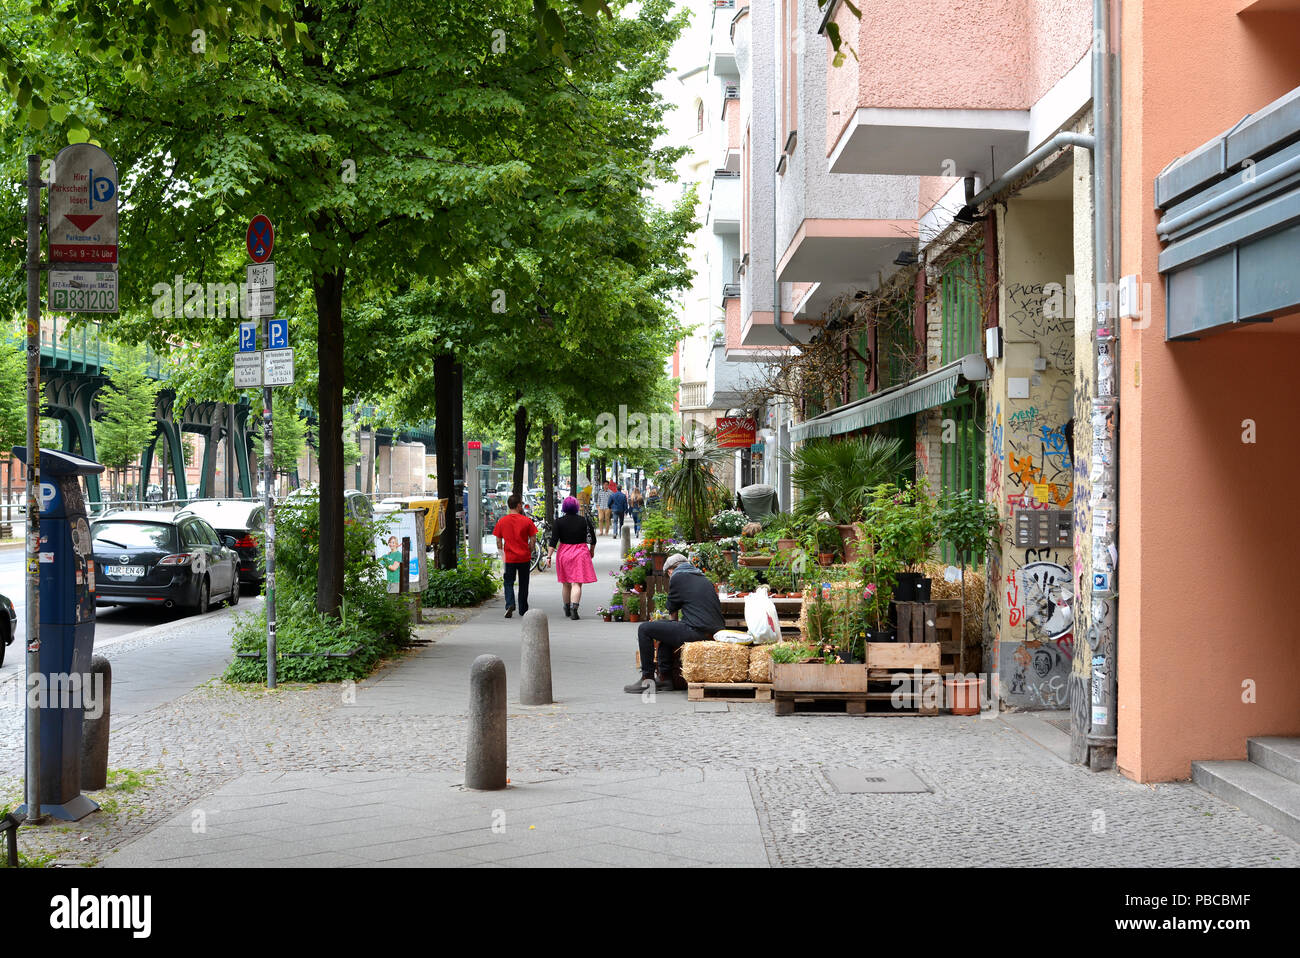 Street scene in the district Prenzlauer Berg in Berlin Stock Photo